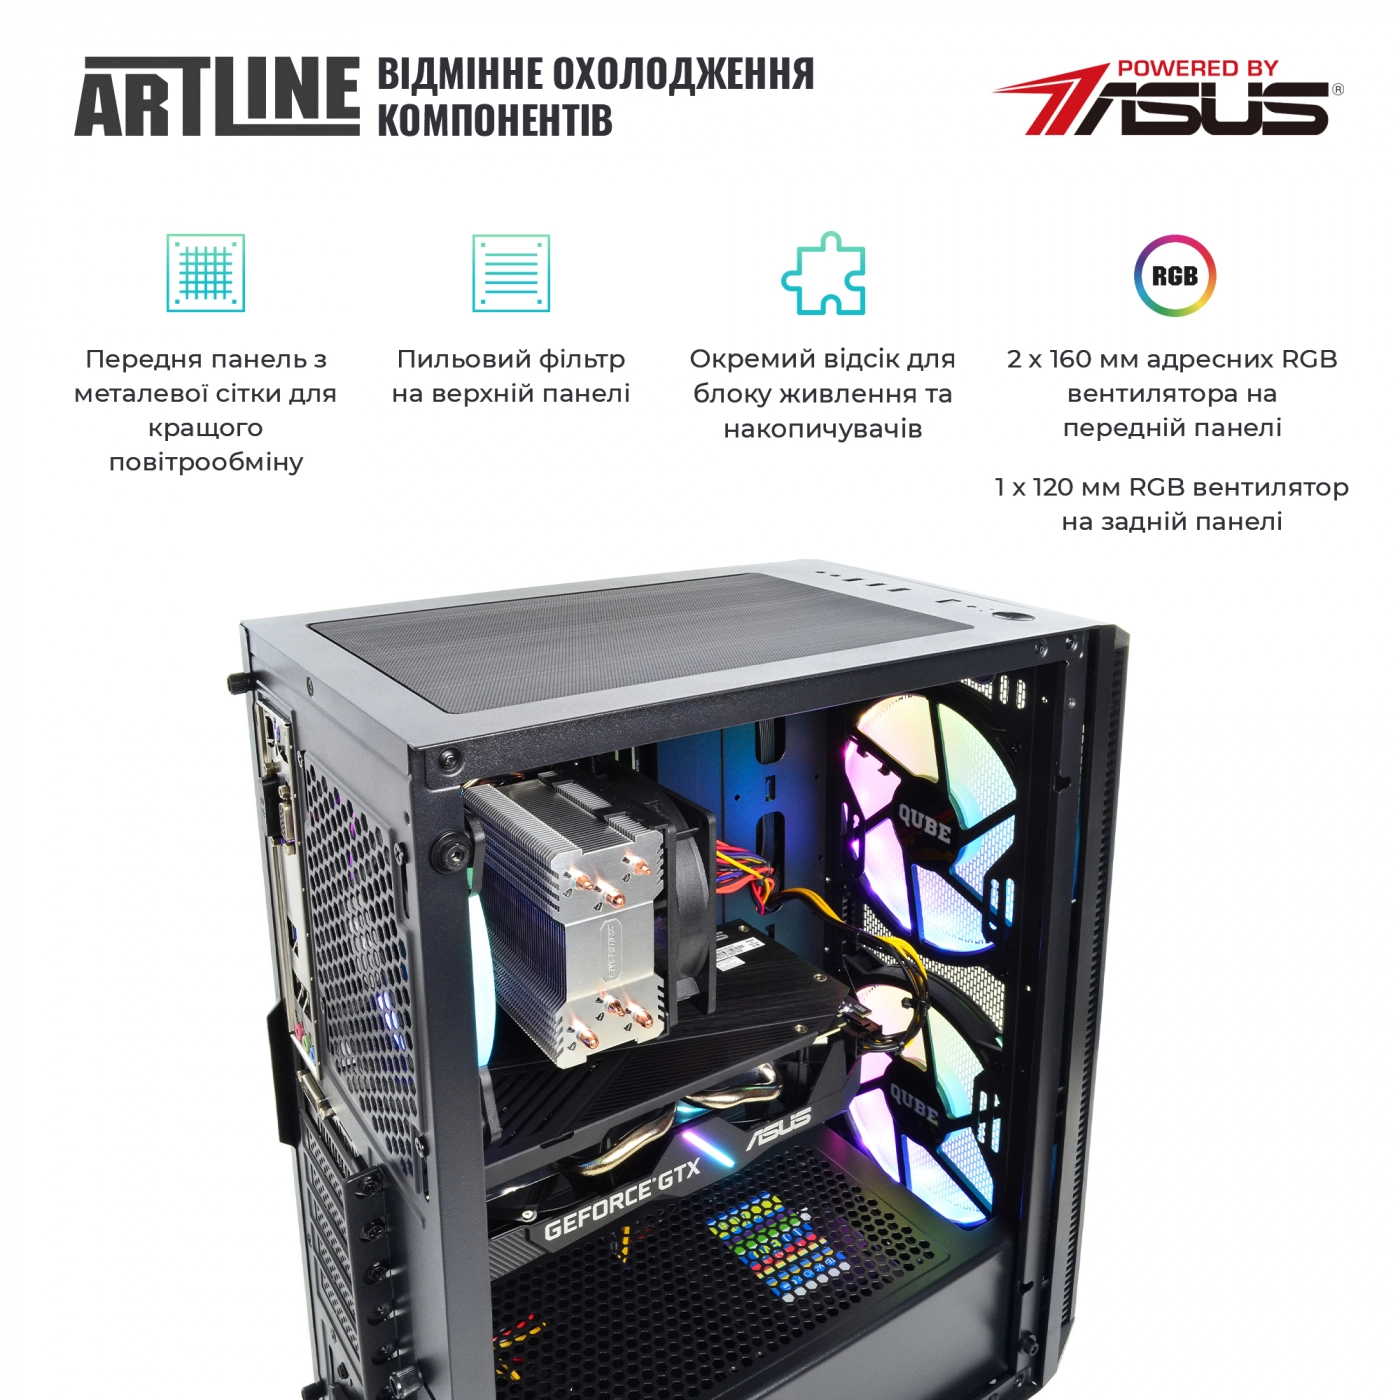 Купить Компьютер ARTLINE Gaming X65v29 - фото 2